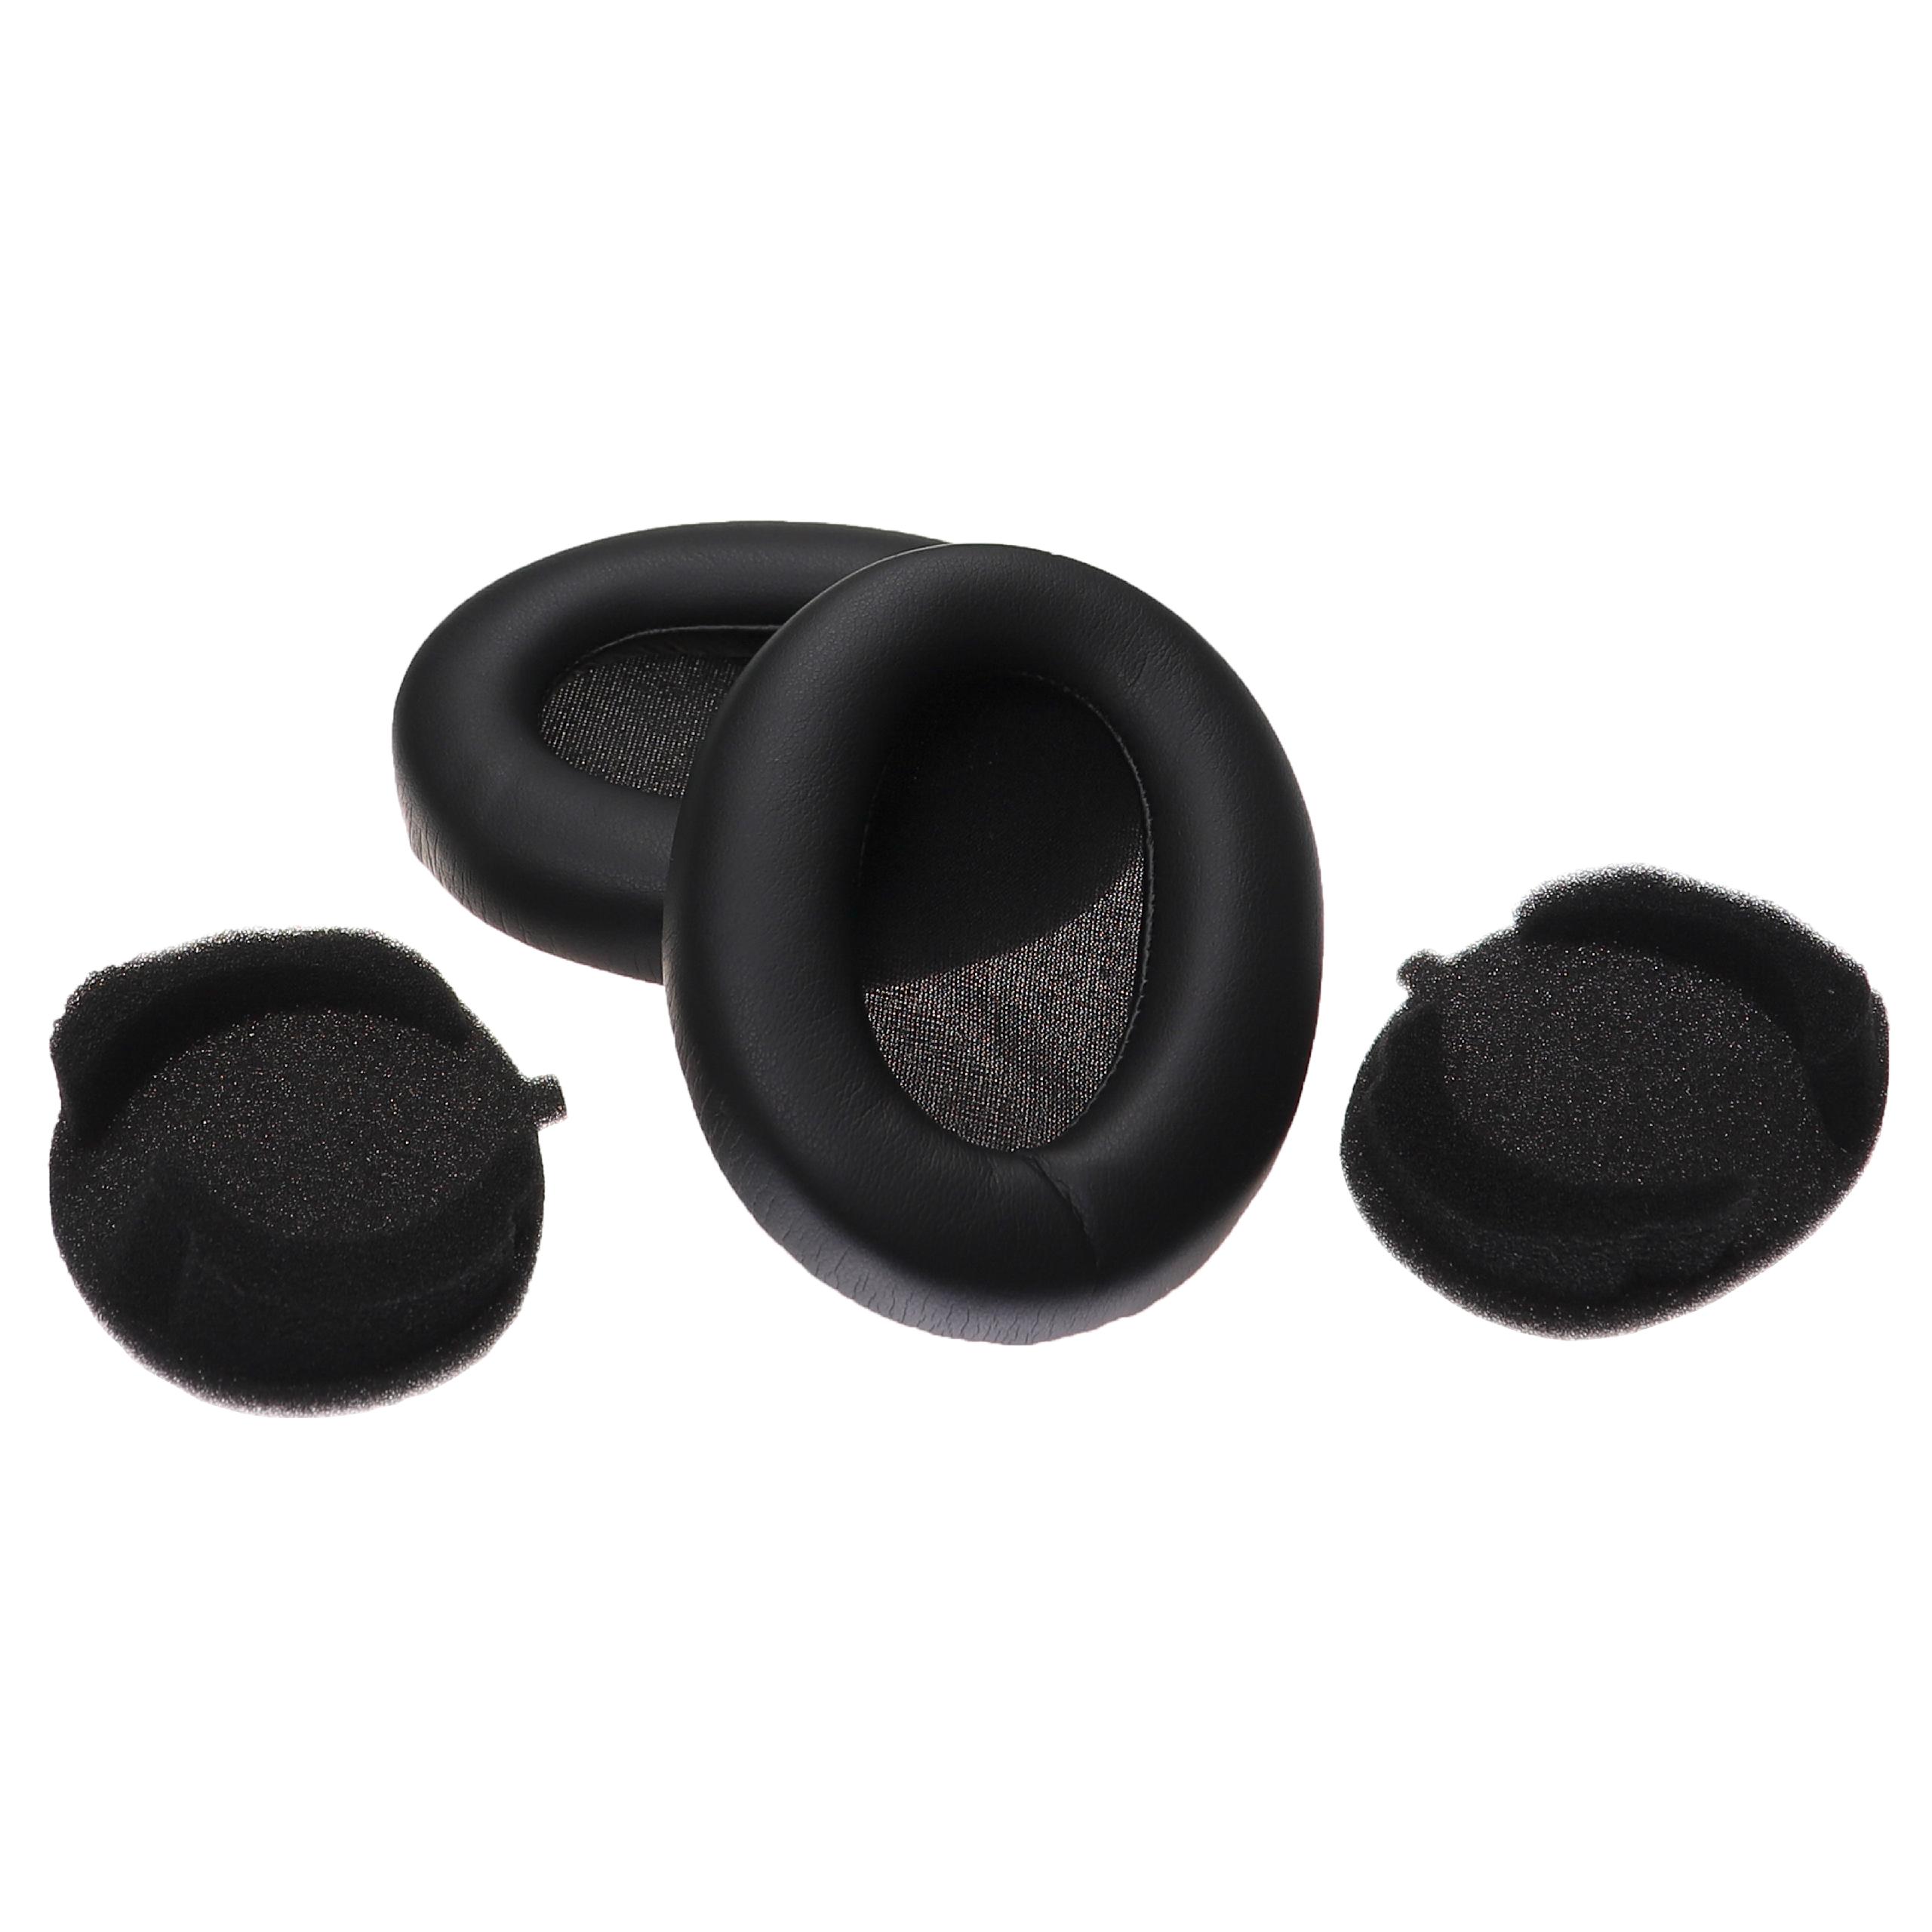 Ohrenpolster für Sony WH-1000XM3 Kopfhörer u.a., 15,4 x 10 cm, Schwarz